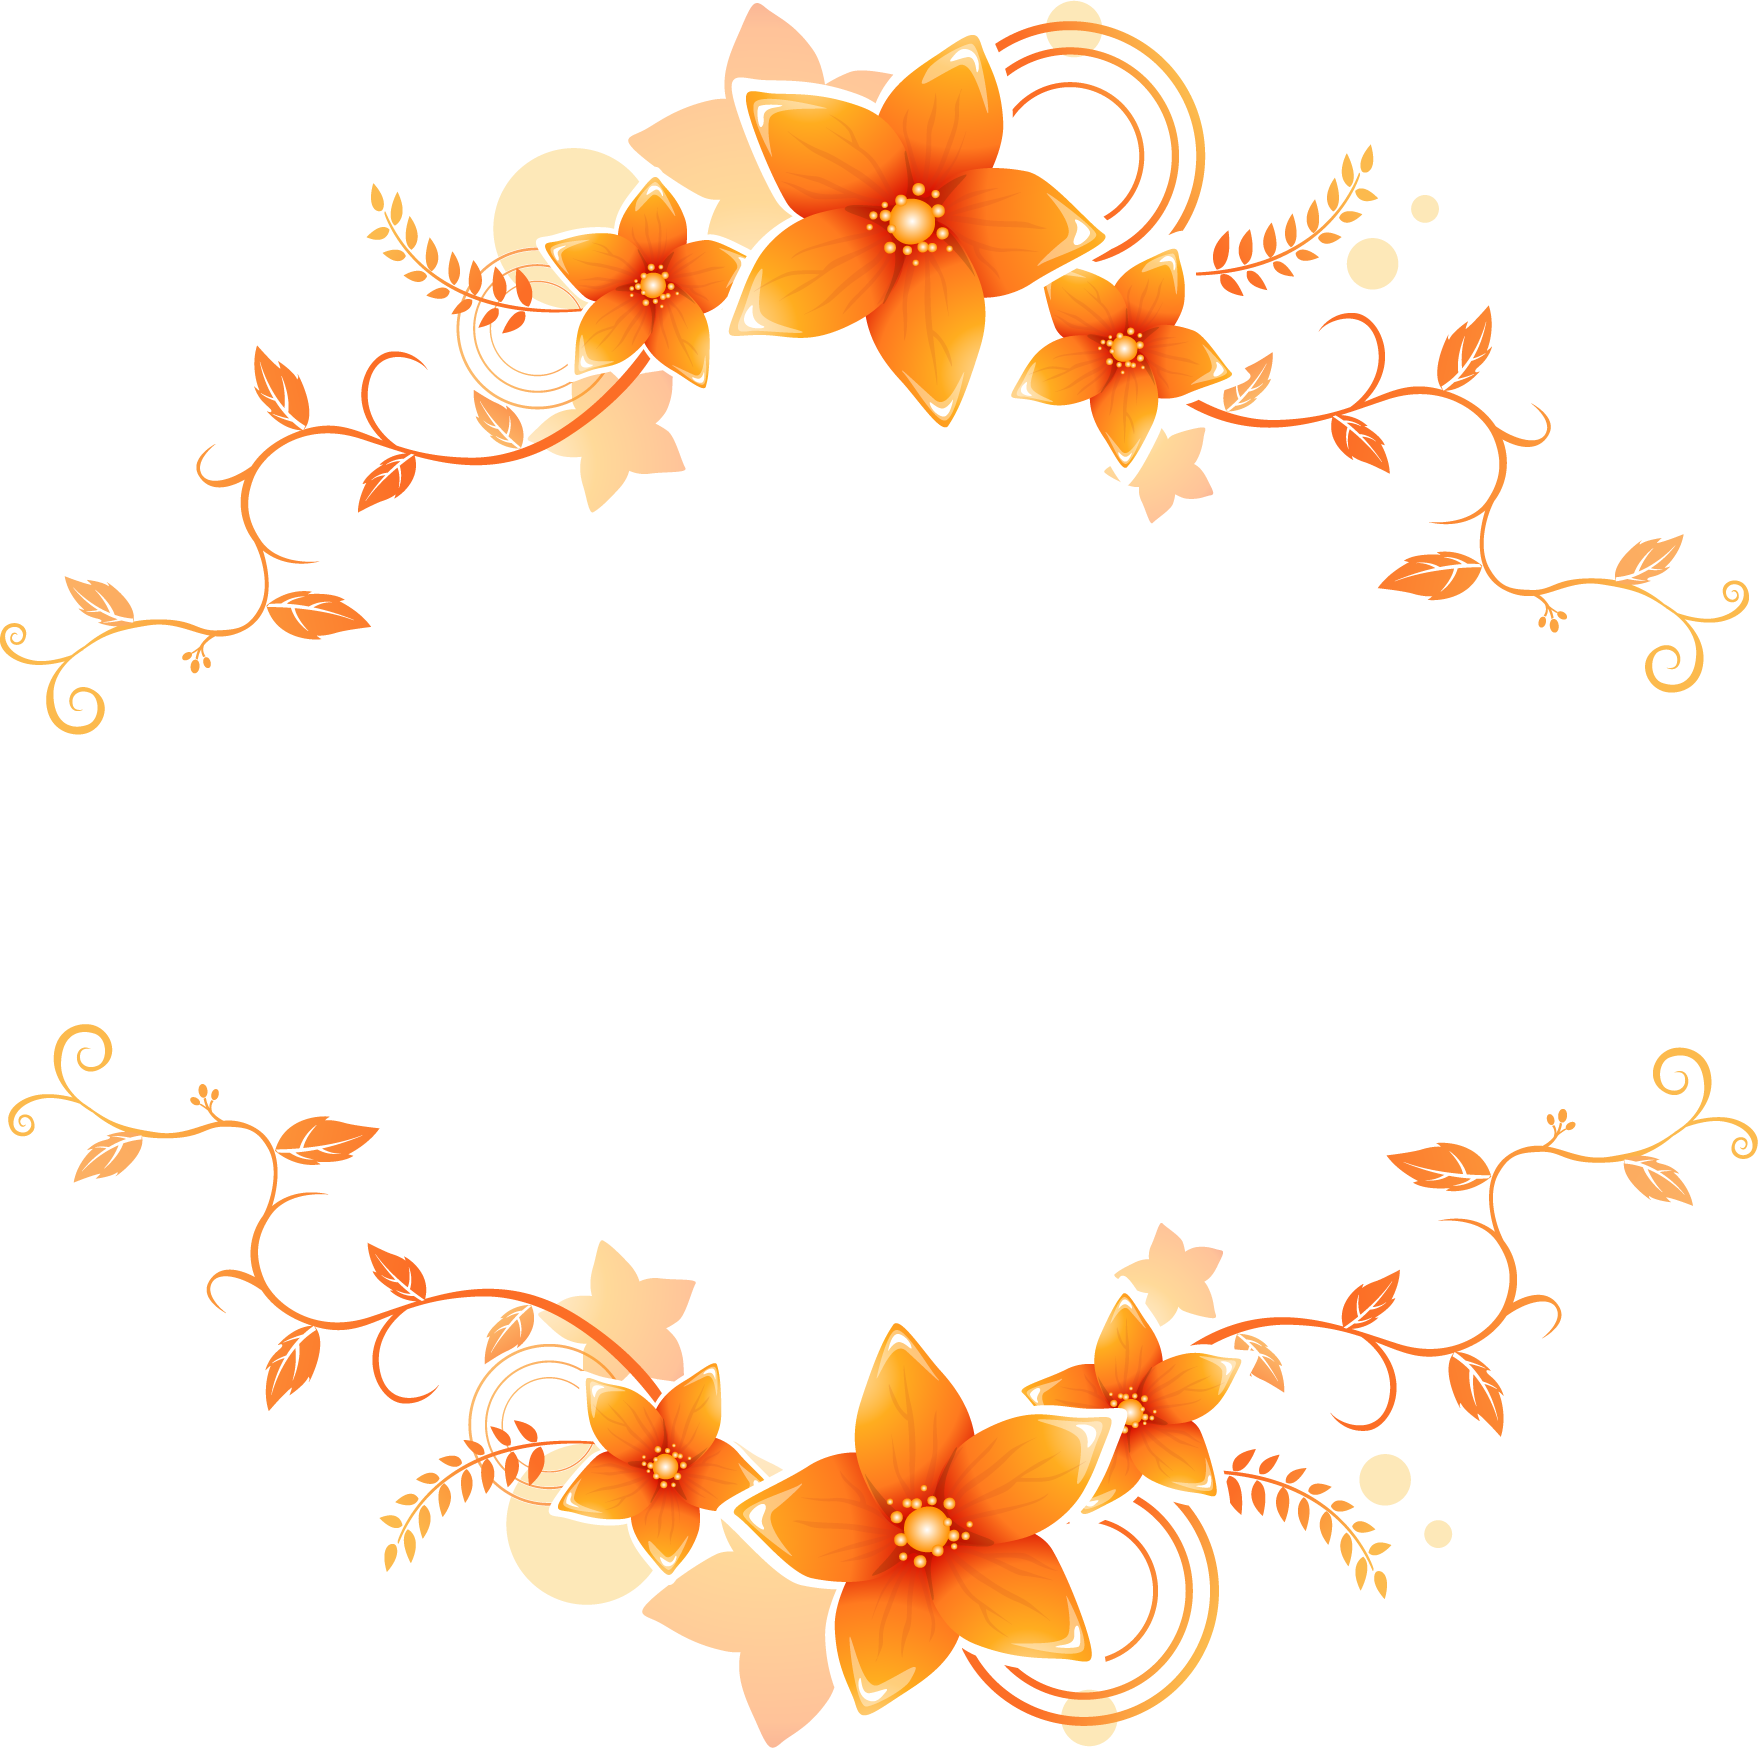 オレンジ色の花のイラスト フリー素材 No 179 オレンジ 上下 蔓葉